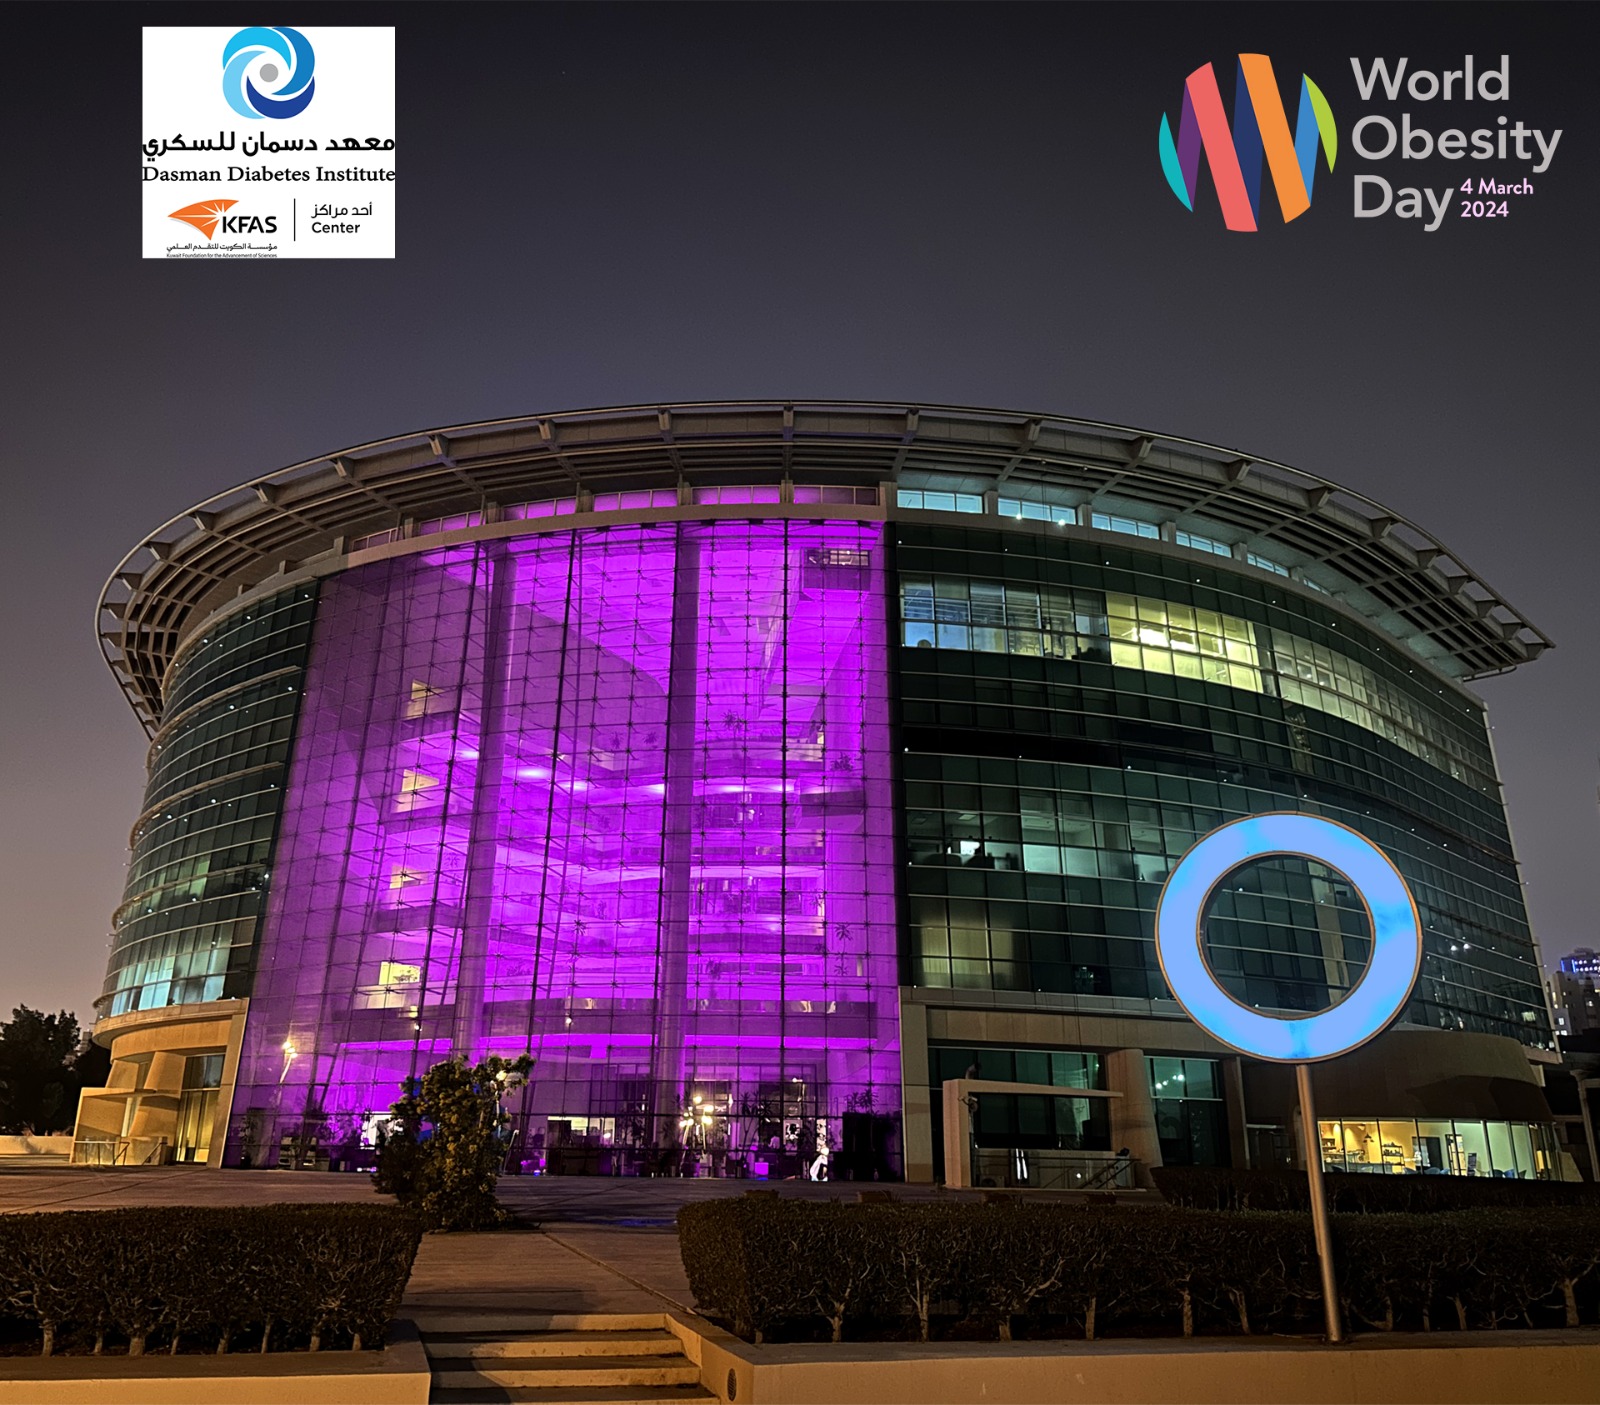 معهد دسمان للسكري مضاء باللون البنفسجي بمناسبة يوم السمنة العالمي